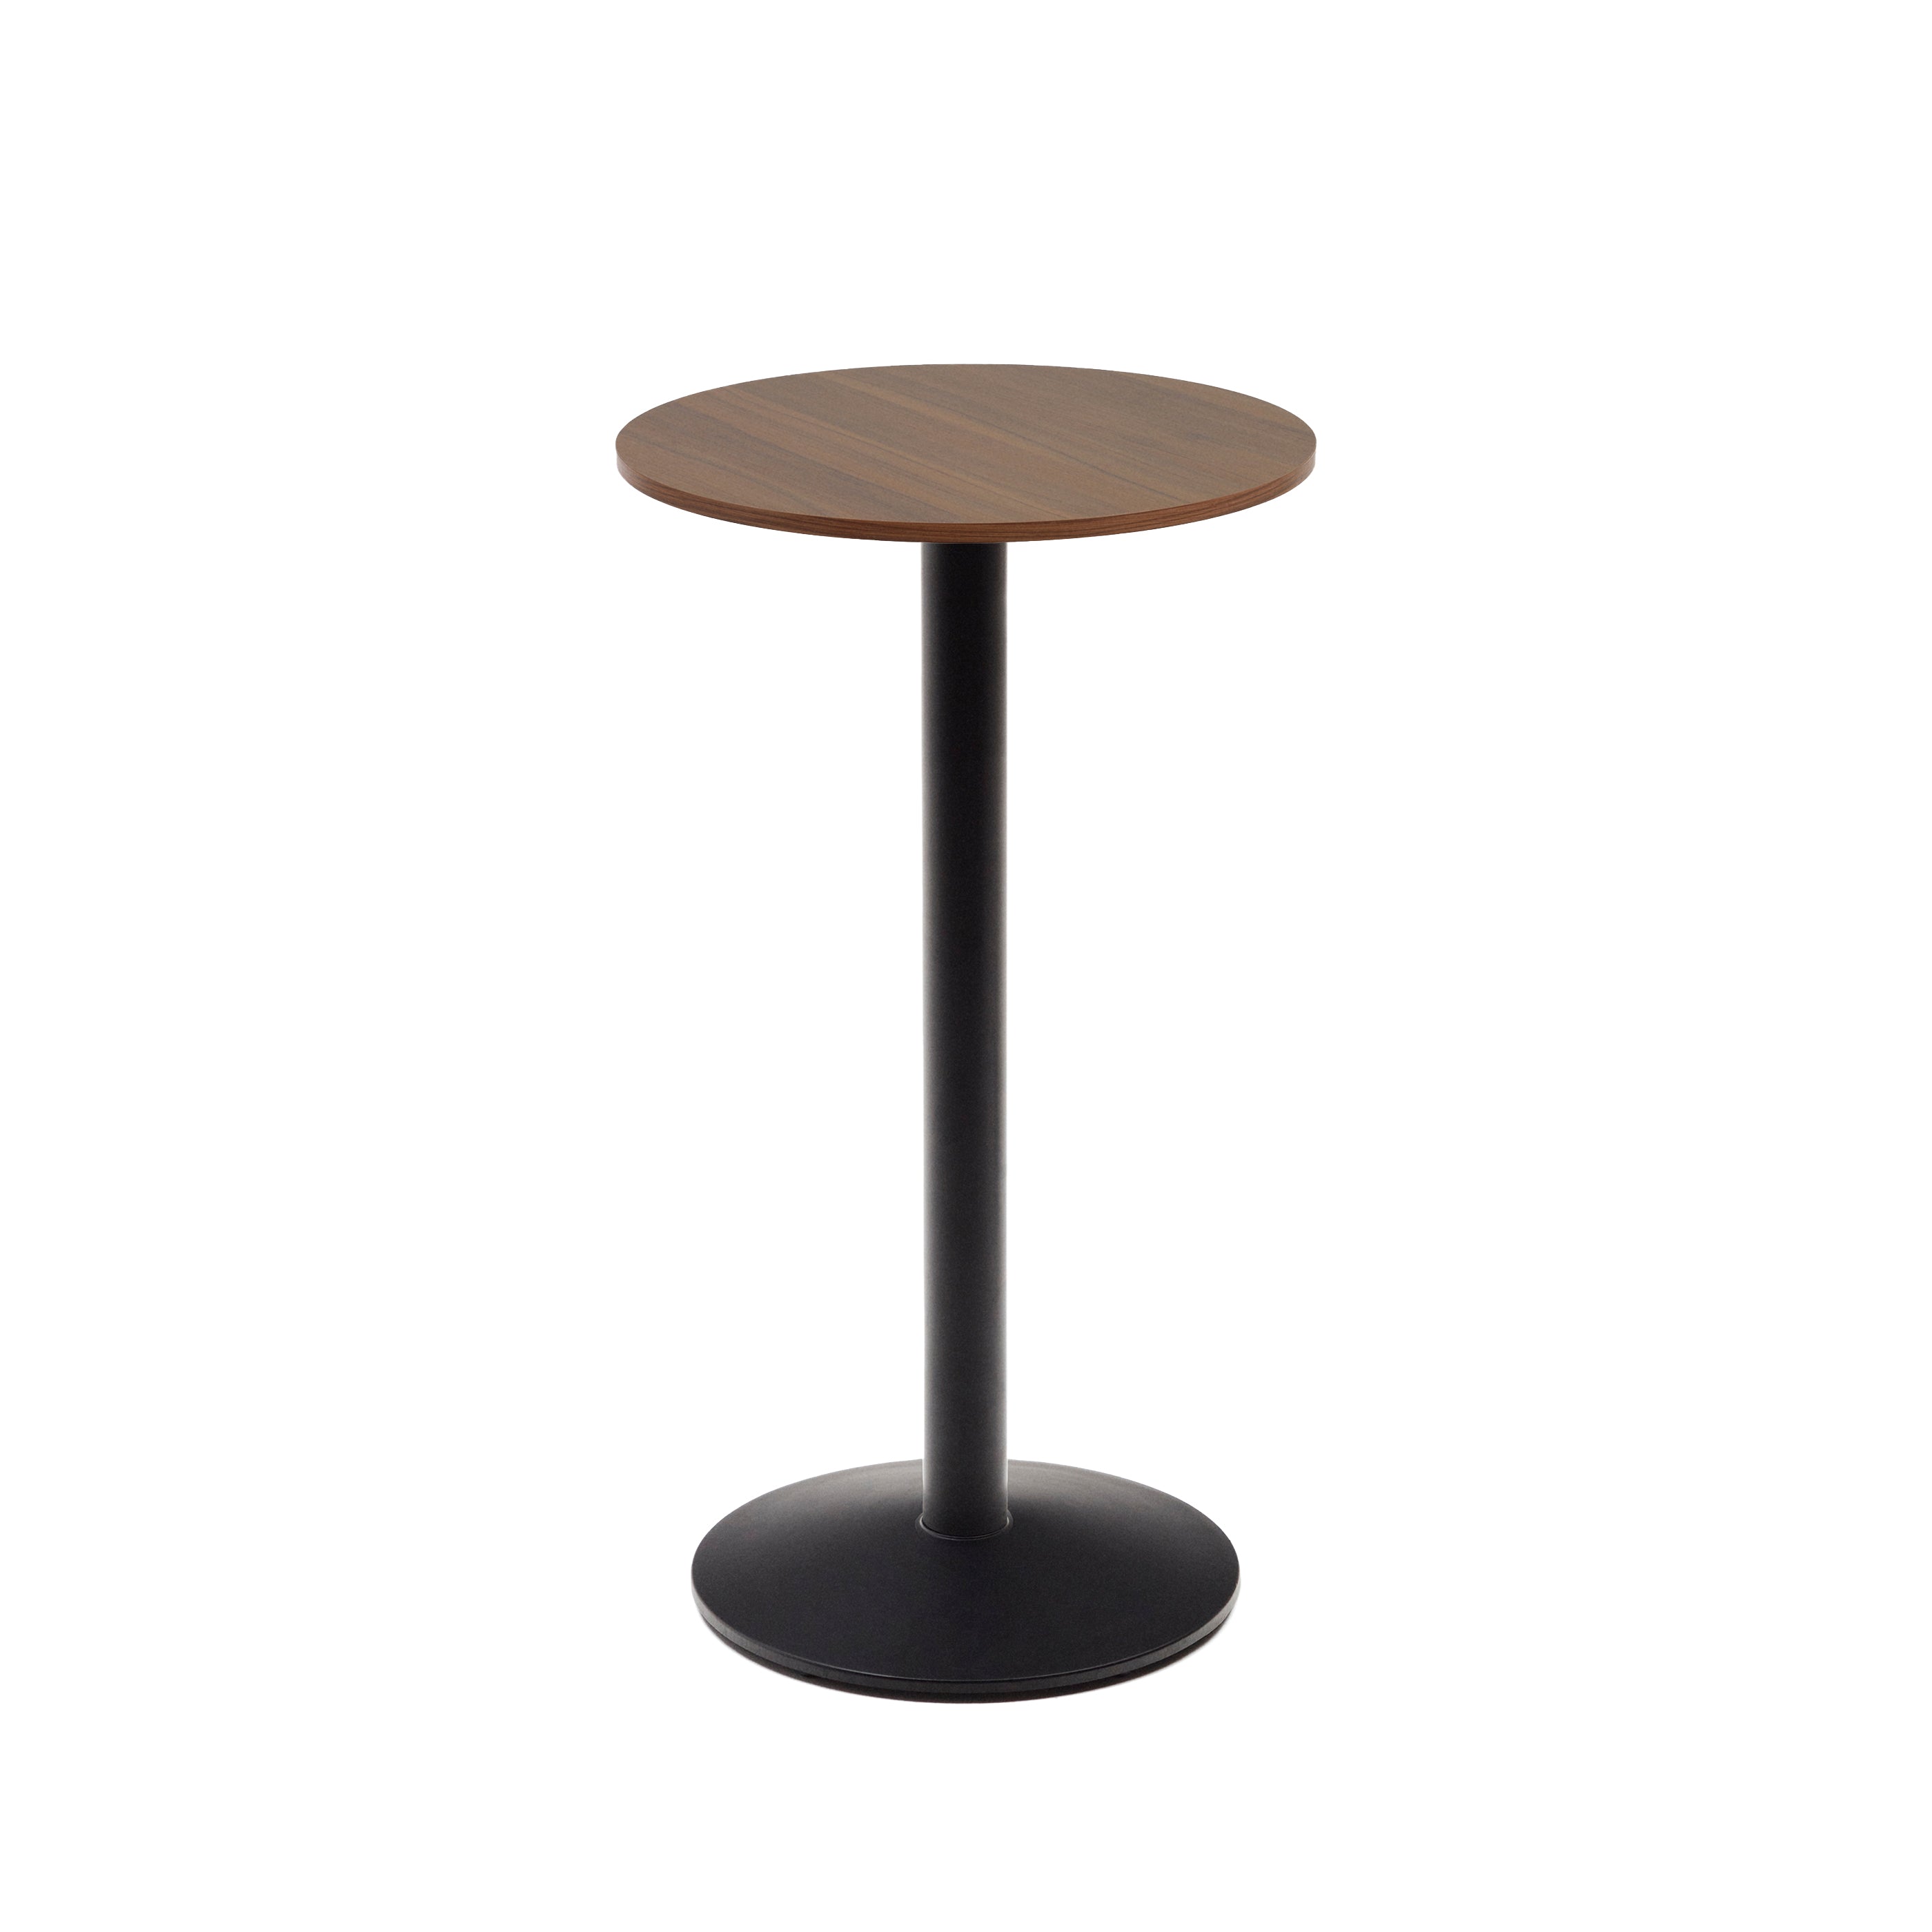 Esilda magas kerek asztal, diófa melaminból, fekete festett fémlábbal, Ø60x96cm